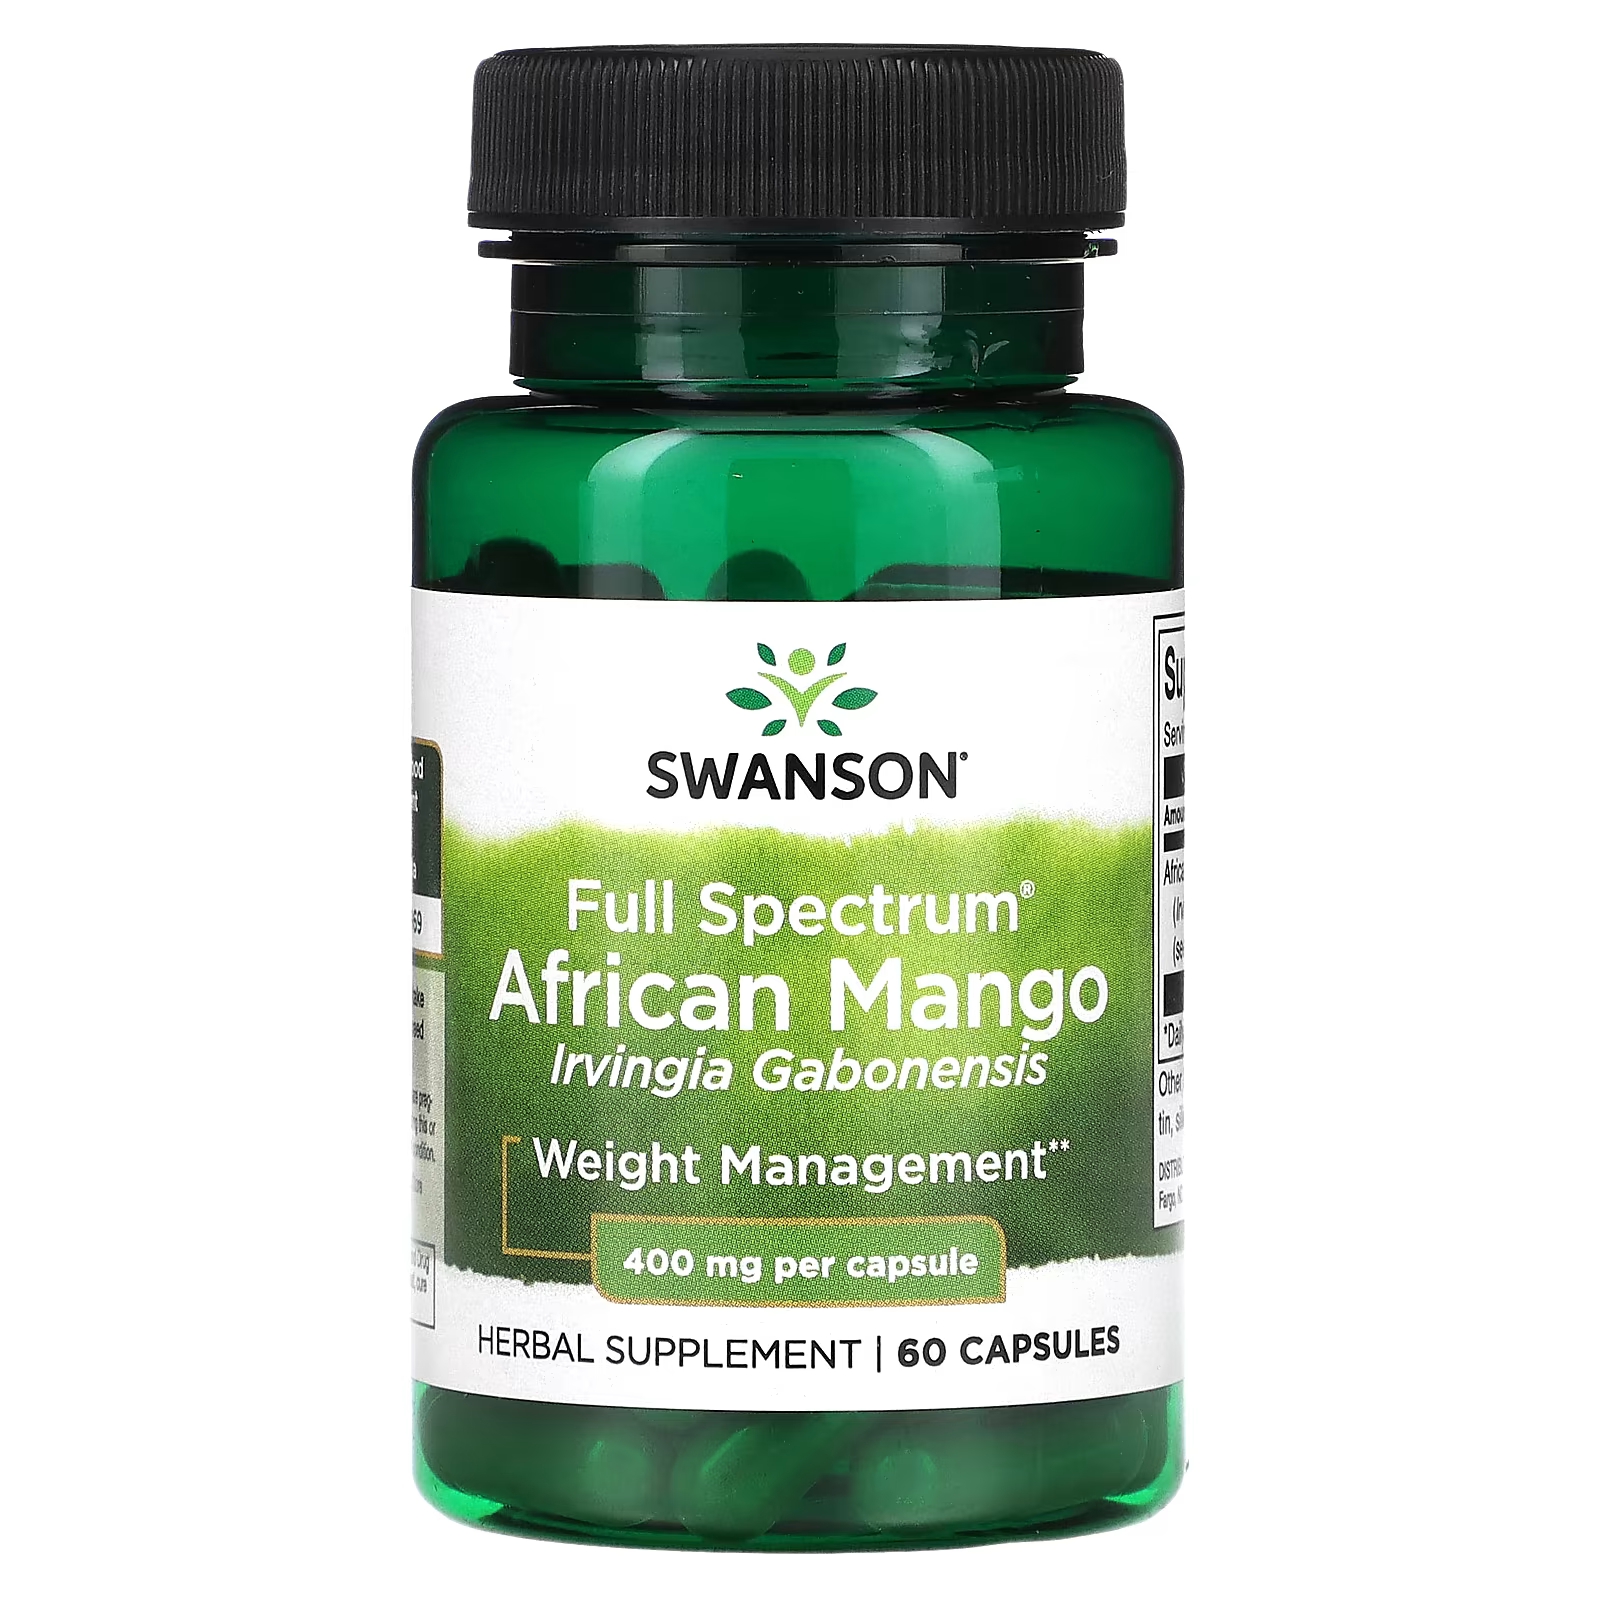 Пищевая добавка Swanson африканское манго полного спектра действия, 60 капсул swanson африканское манго полного спектра 400 мг 60 капсул